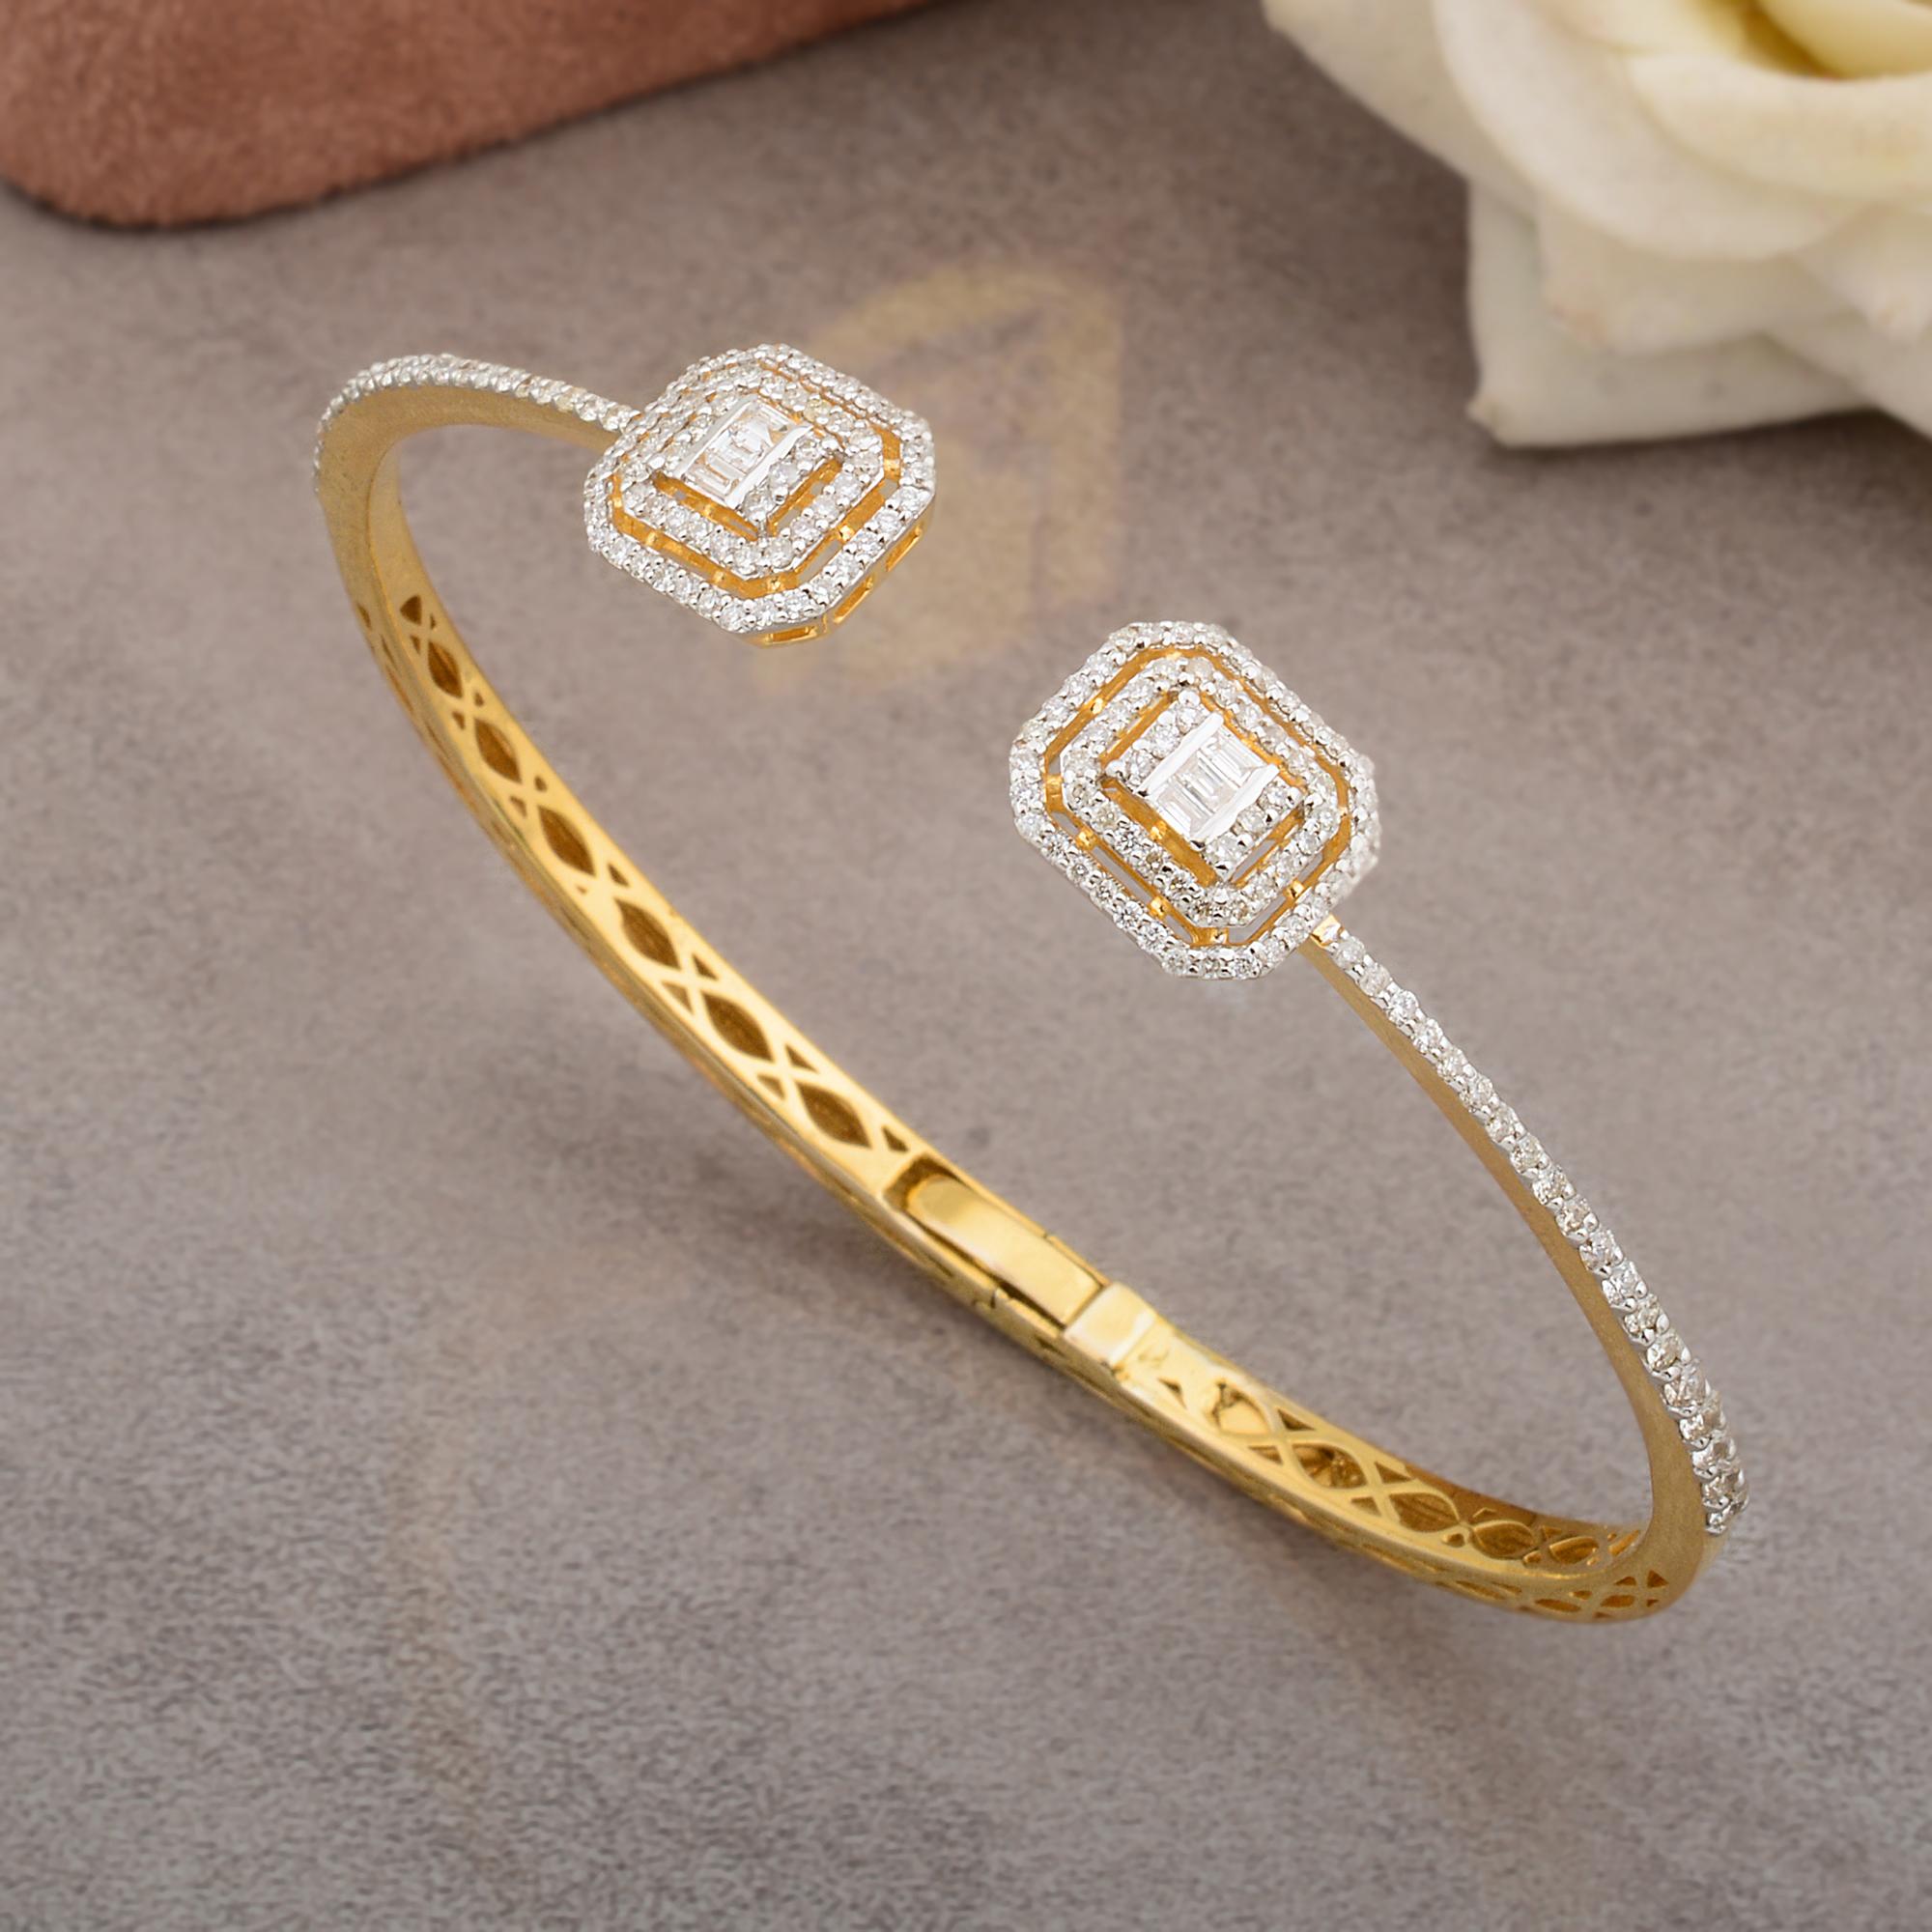 Ce bracelet de diamants délicats avec 1,2 ct. Les diamants véritables sont une promesse de perfection et de pureté. Ce bracelet est serti en or jaune massif 10k. Vous pouvez choisir ce bracelet en Or Rose 10k/Or Jaune/Or Blanc.

C'est un cadeau